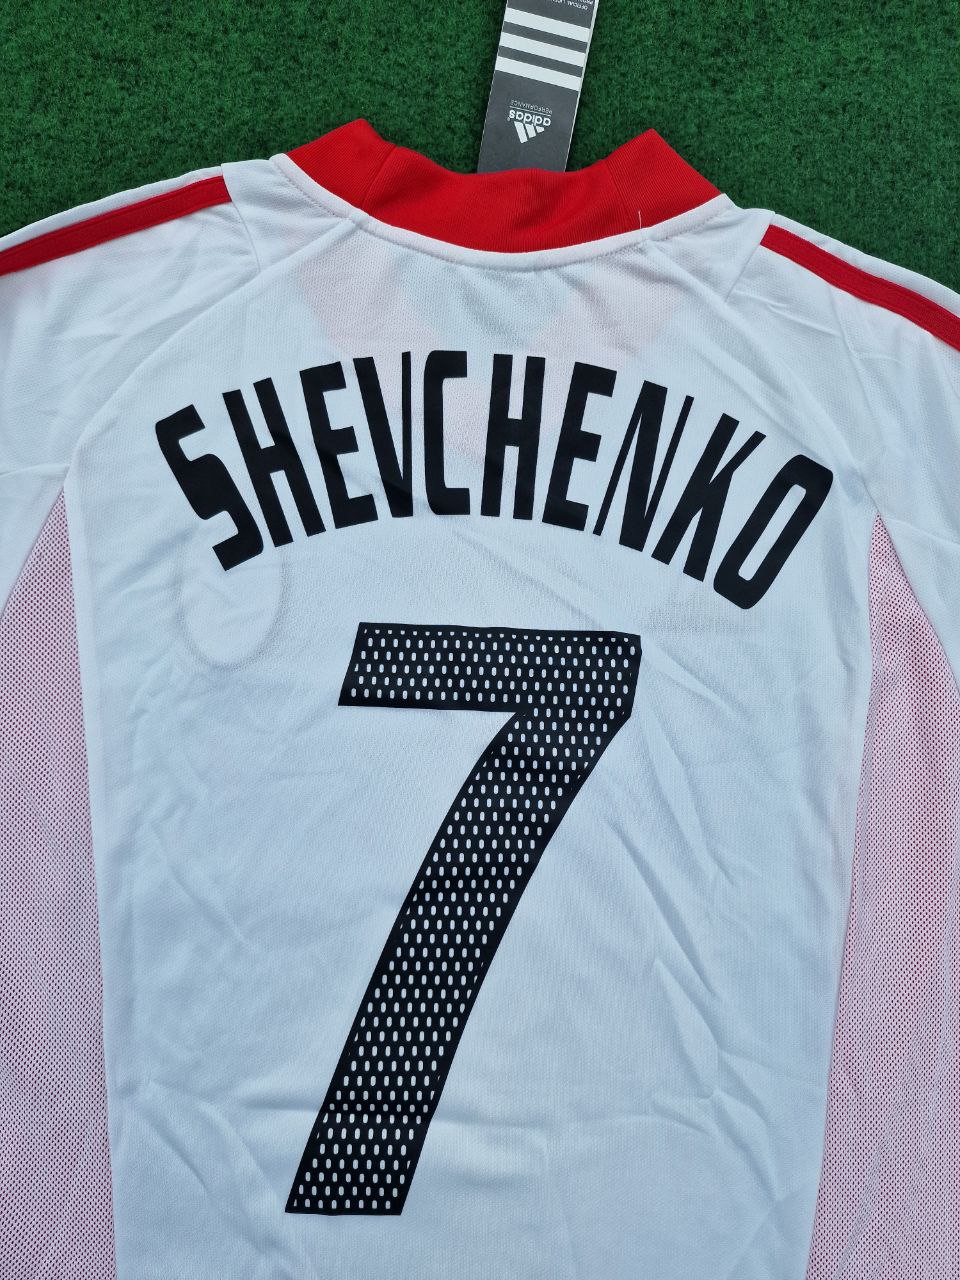 2003 Andry Schevchenko AC Mailand Weißes Retro-Trikot